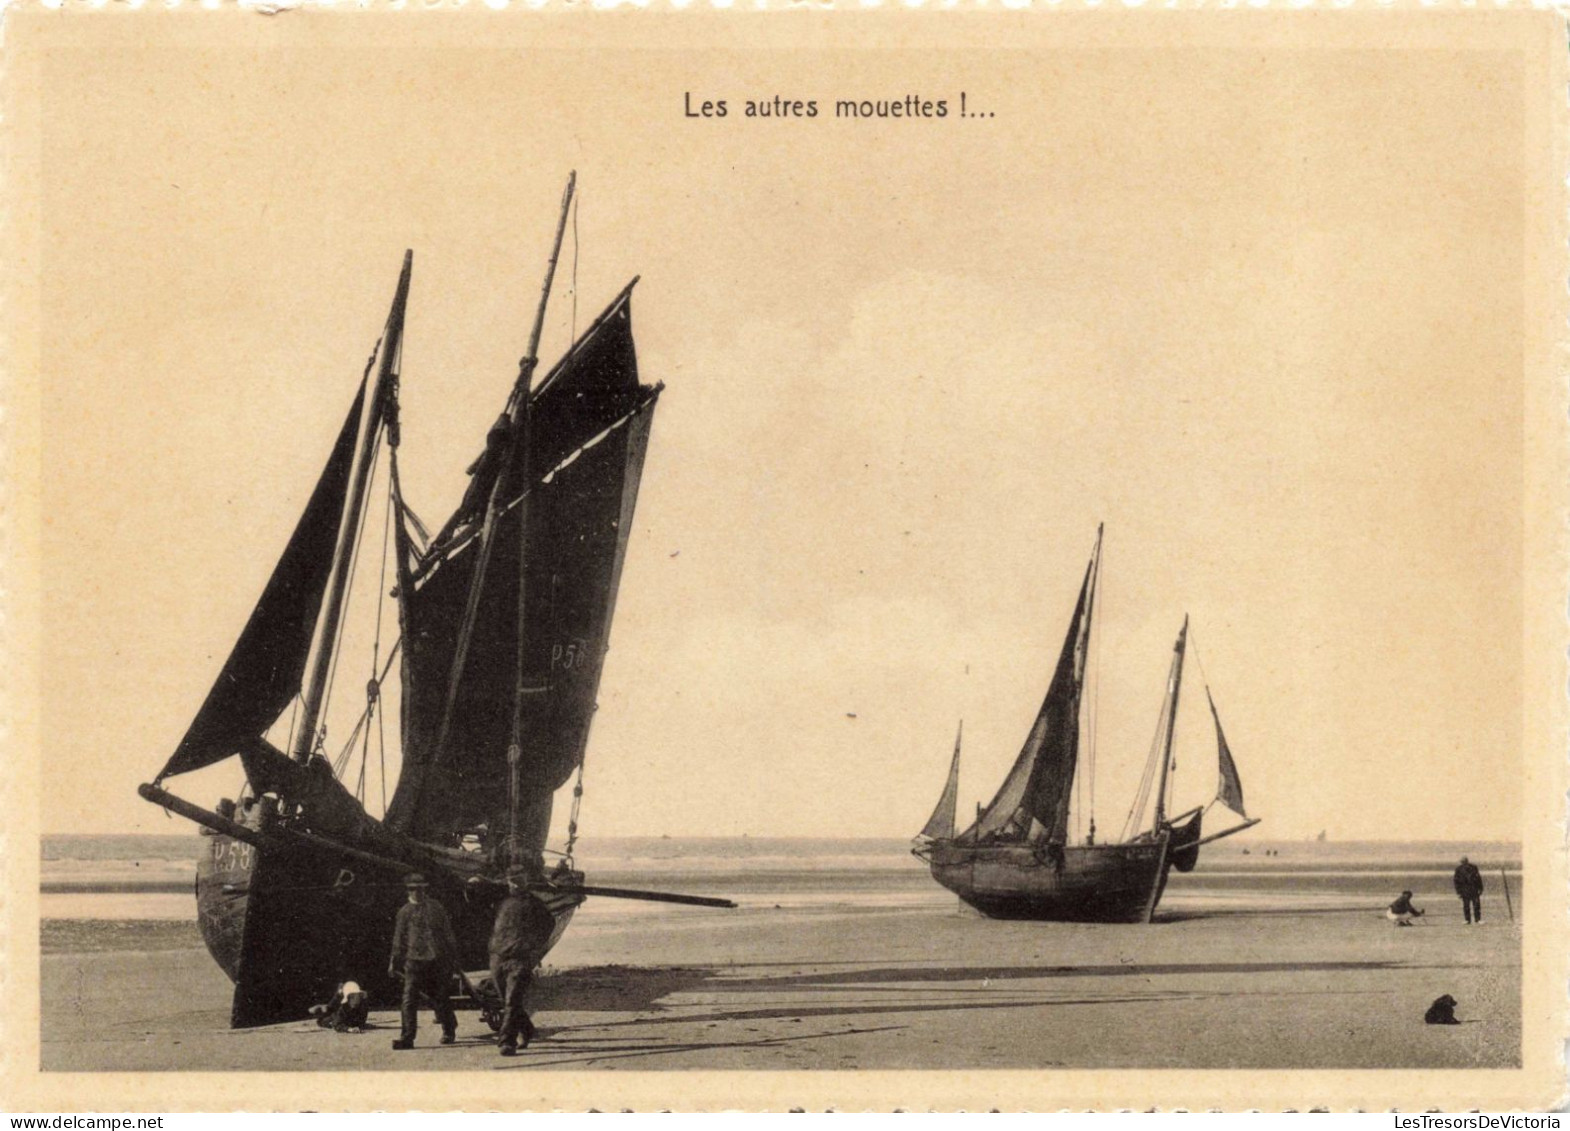 TRANSPORTS - Bateaux - Voiliers - Les Autres Mouettes - Carte Postale Ancienne - Segelboote